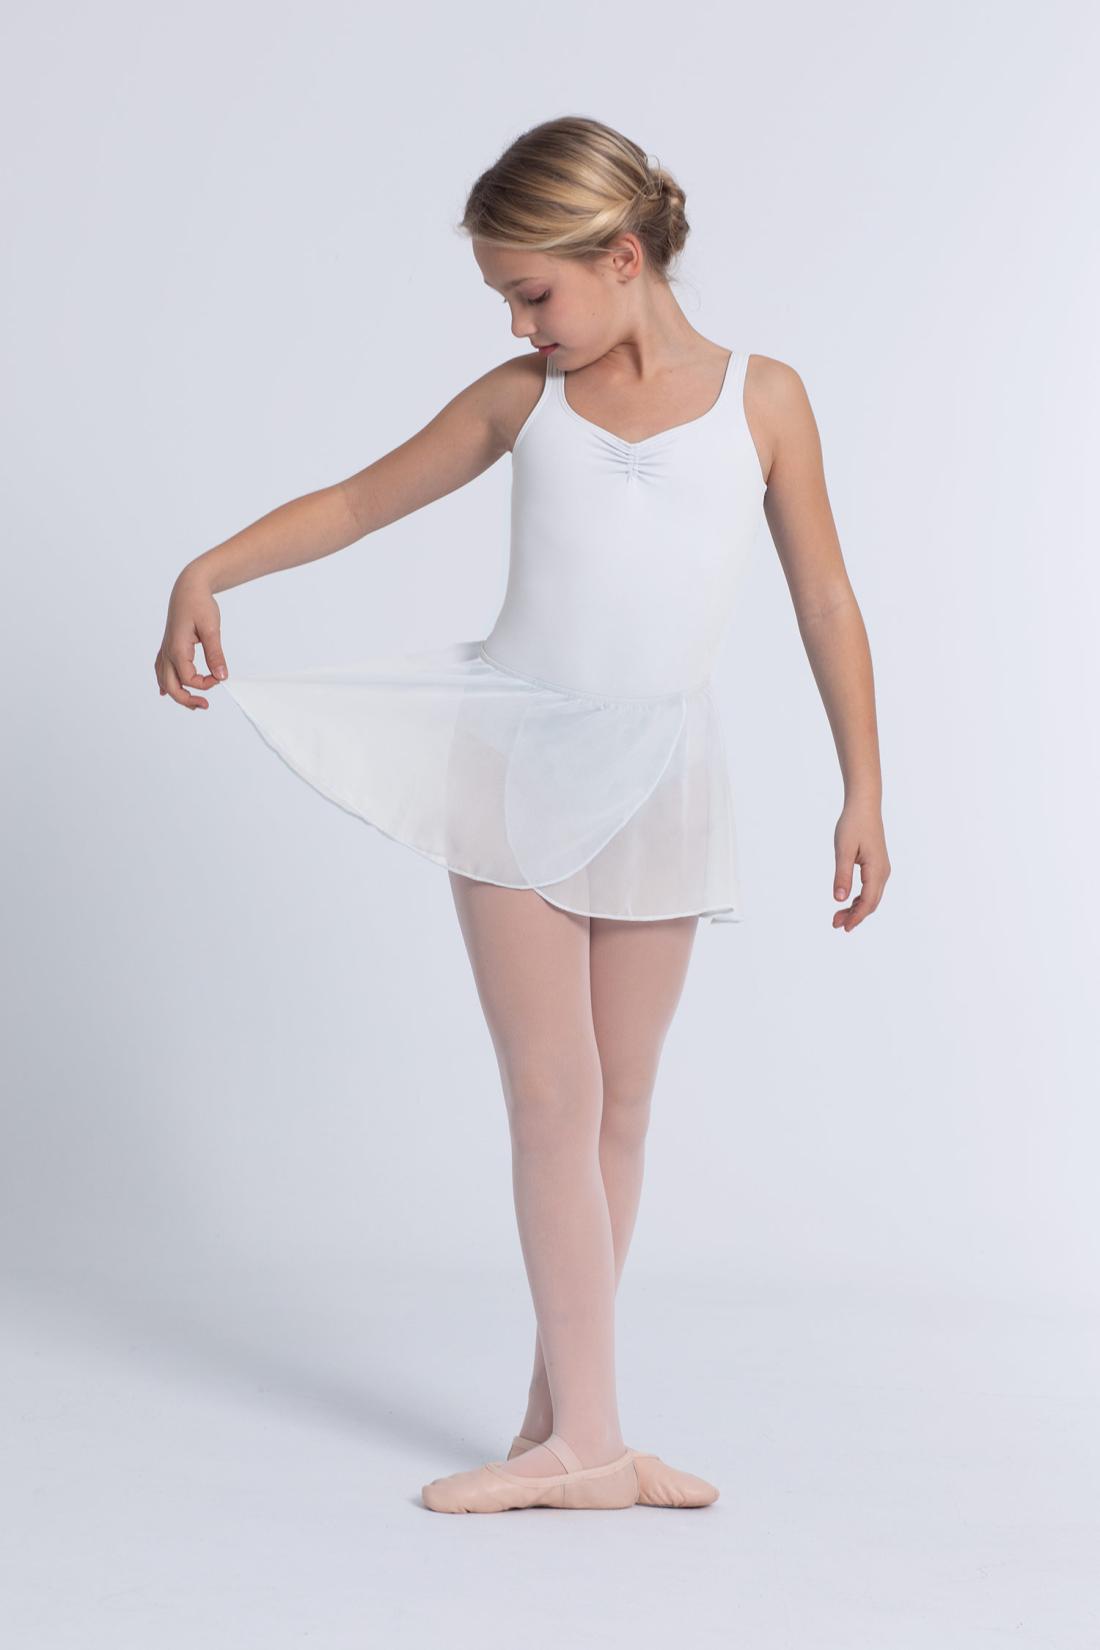 Ballettröckchen Giselle gekreuzt mit elastischem Gummi und Intermezzo Chiffon Stoff